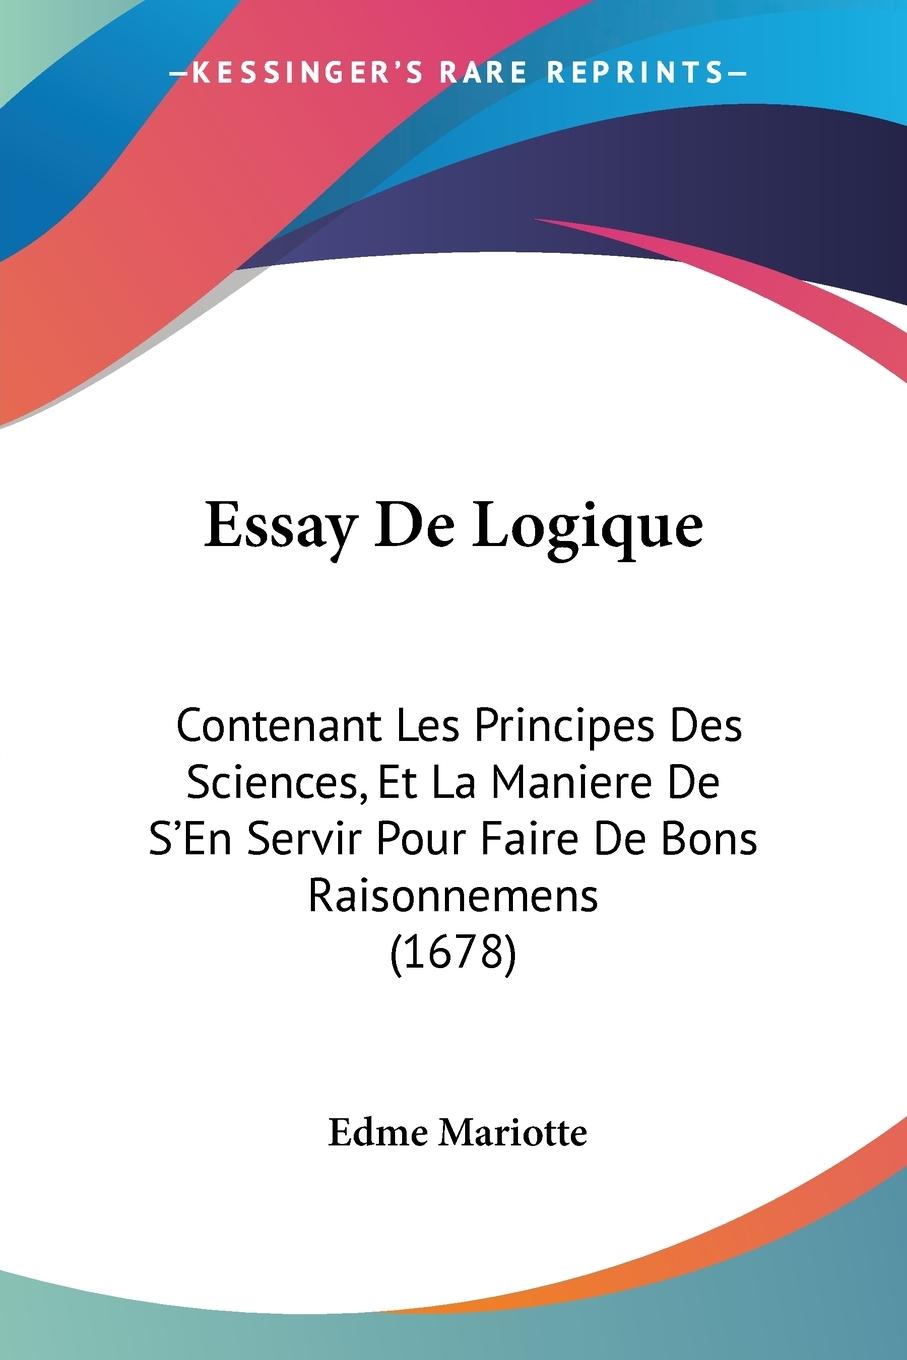 Essay De Logique - Mariotte, Edme